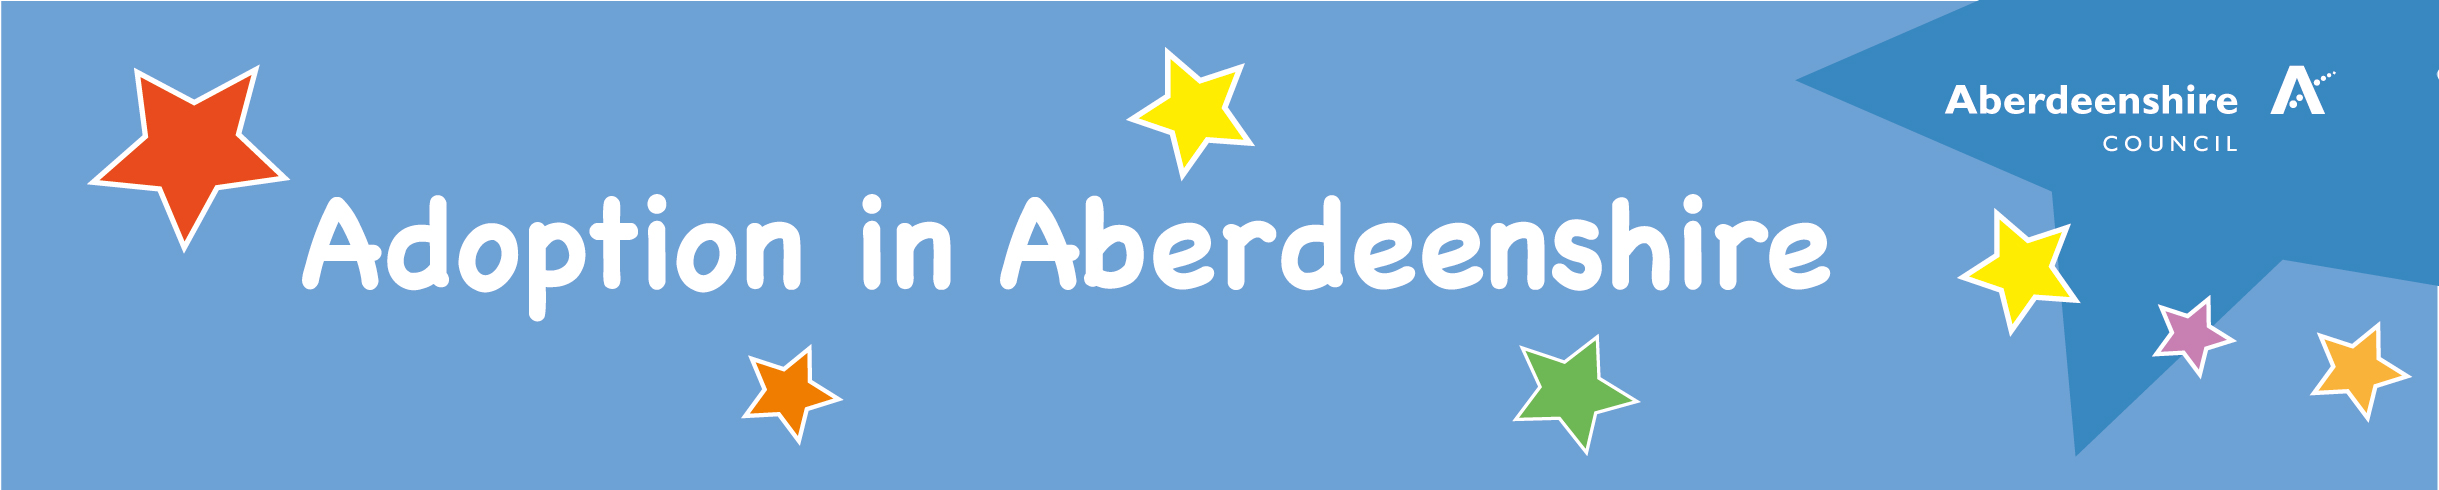 Adoption in Aberdeenshire banner